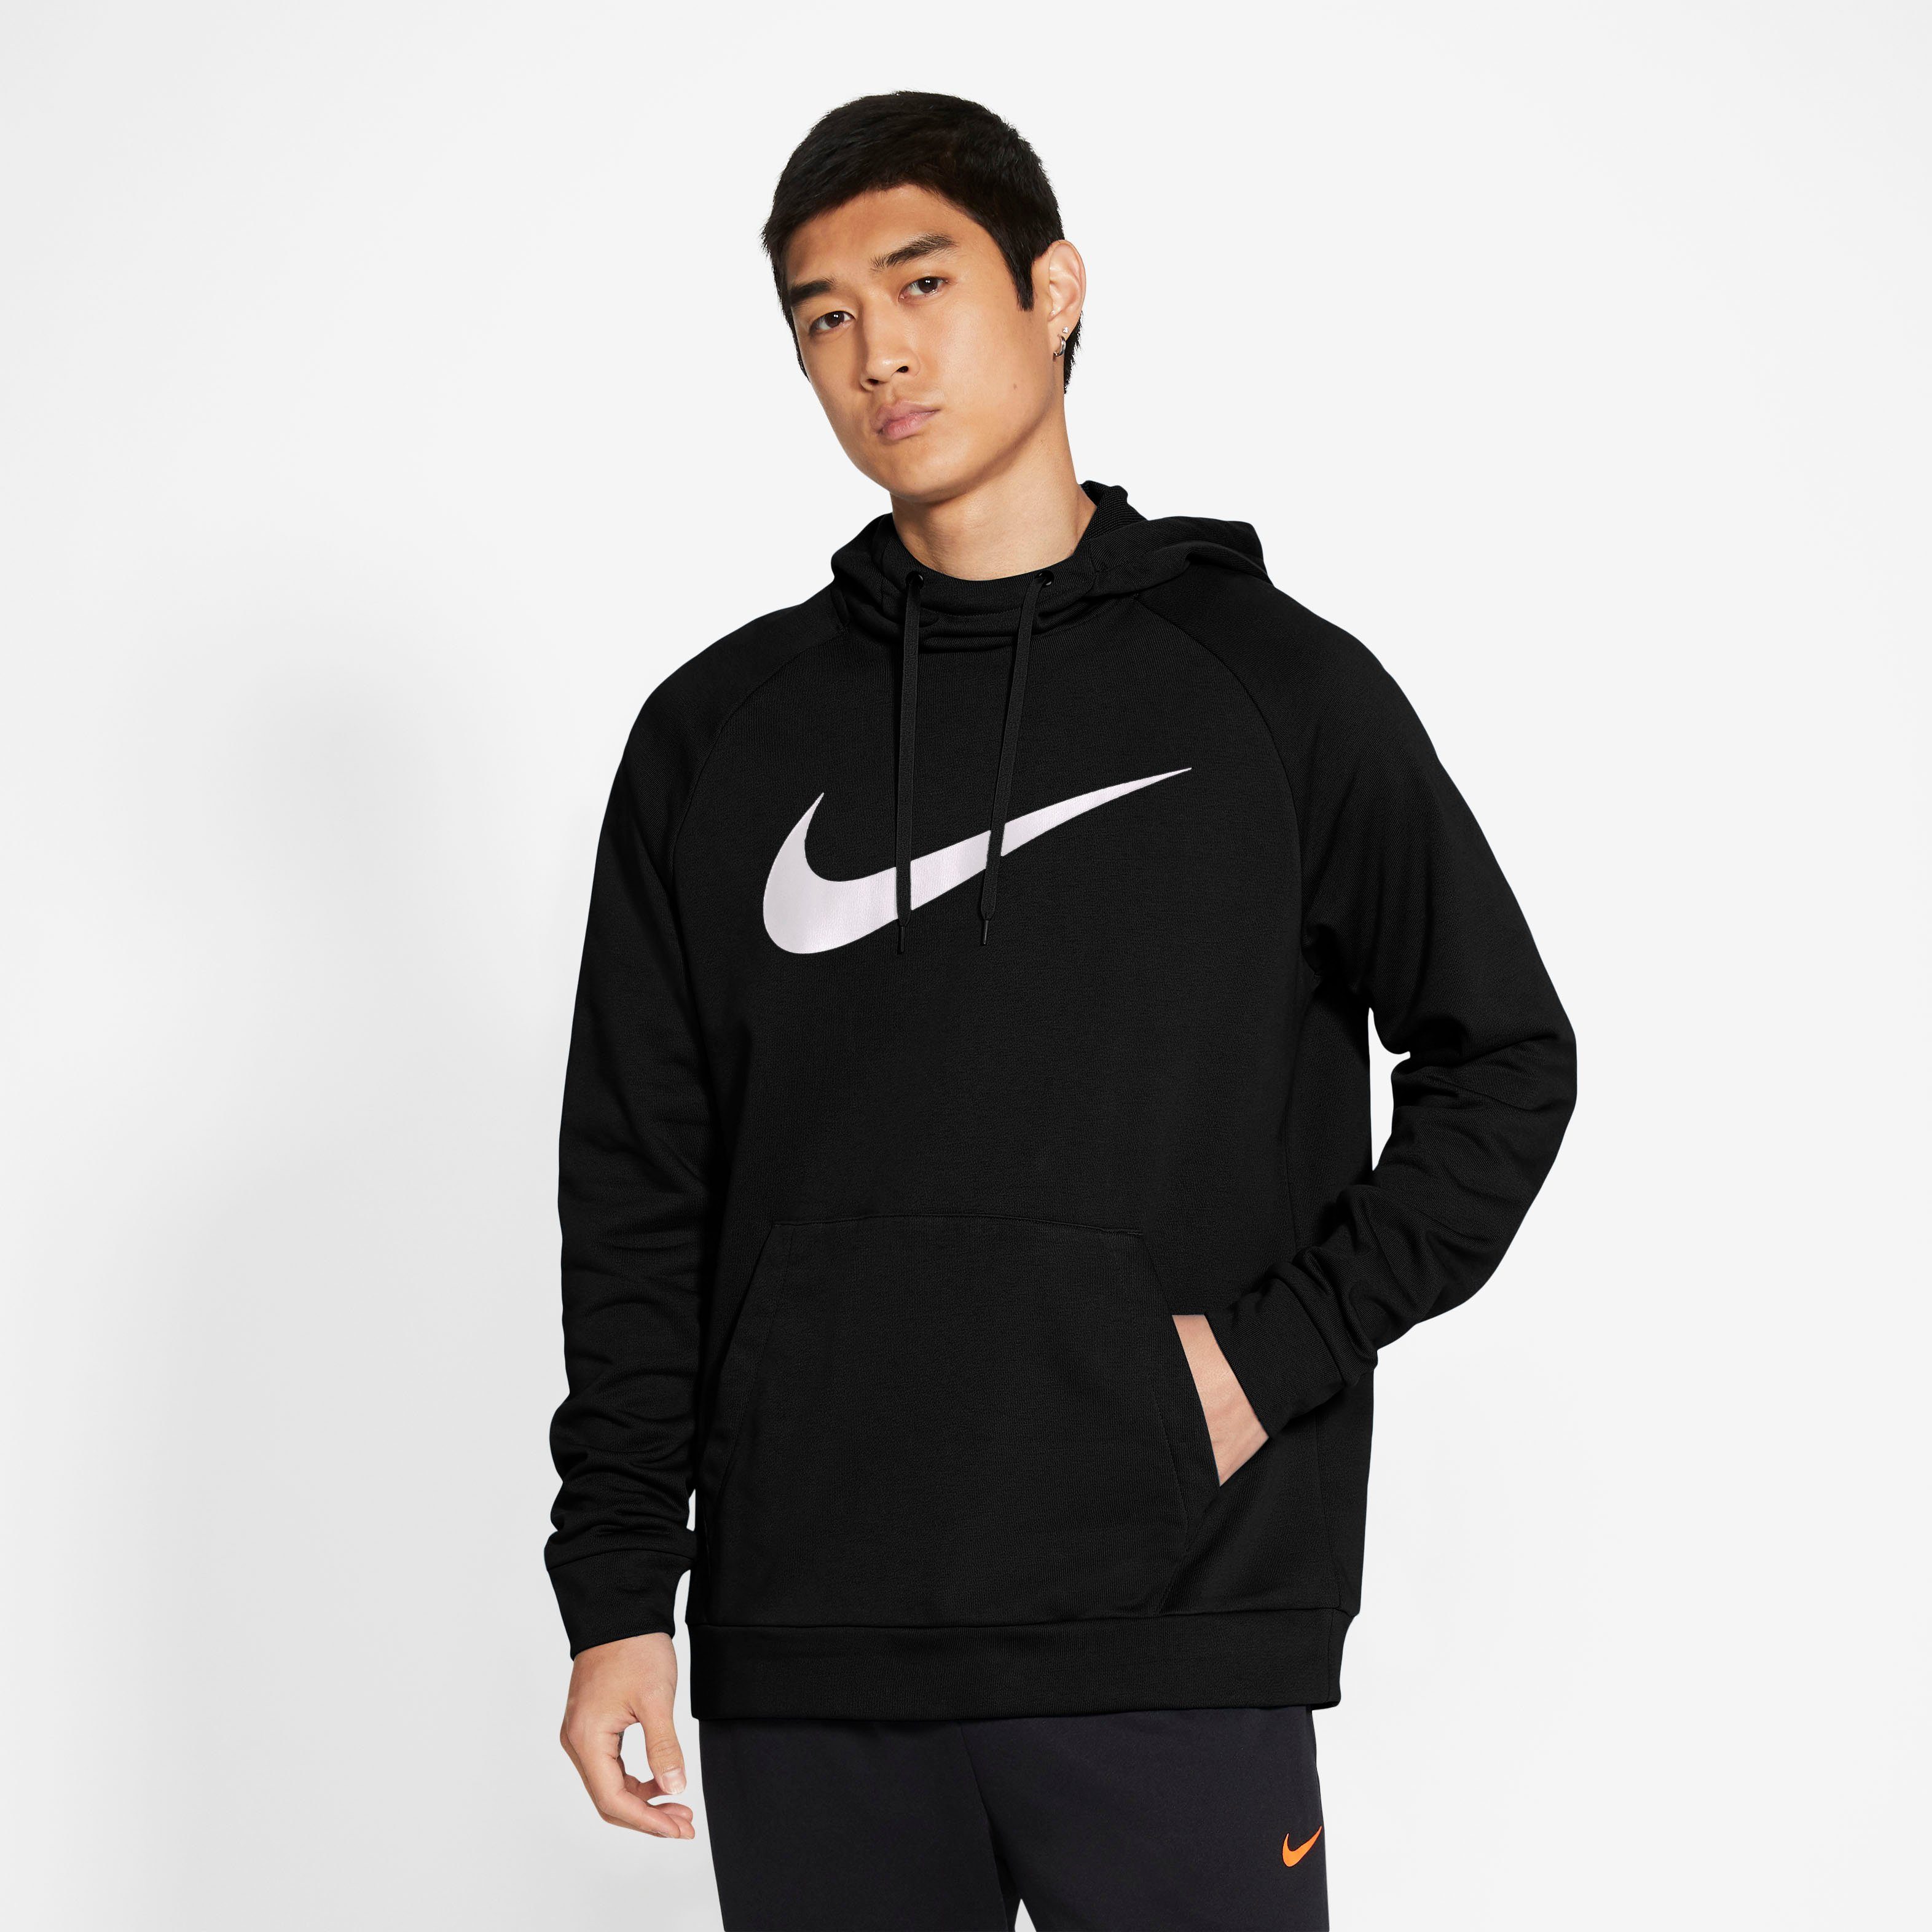 Nike Herren Hoodies online kaufen » Herren Kapuzenpullover | OTTO